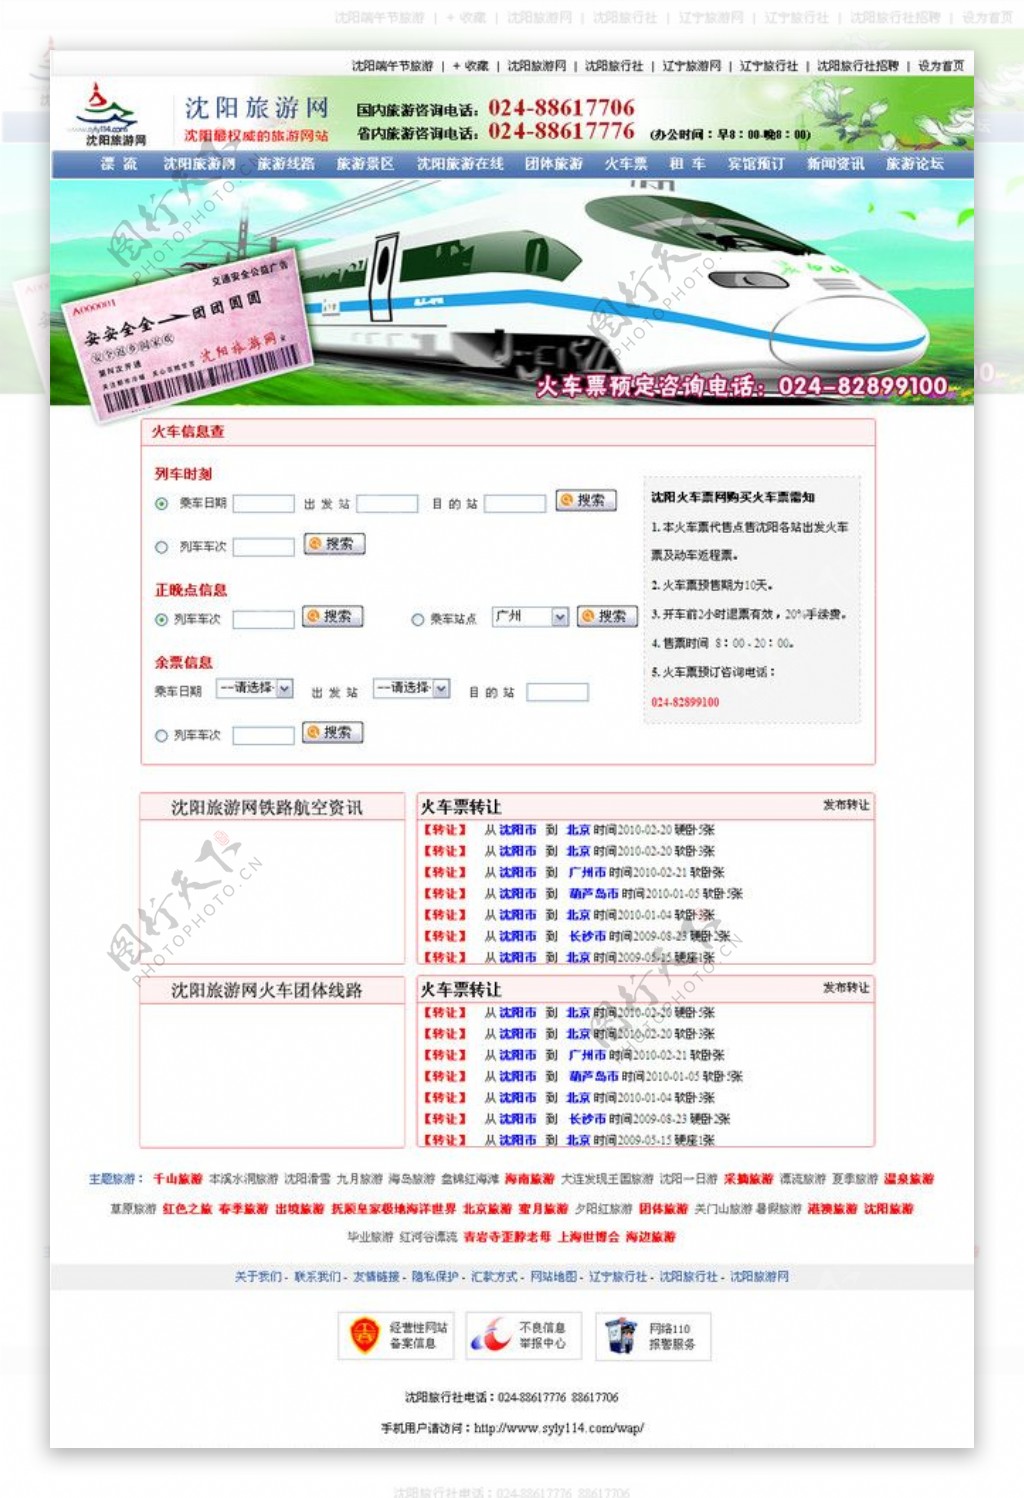 旅游网站火车票预订图片